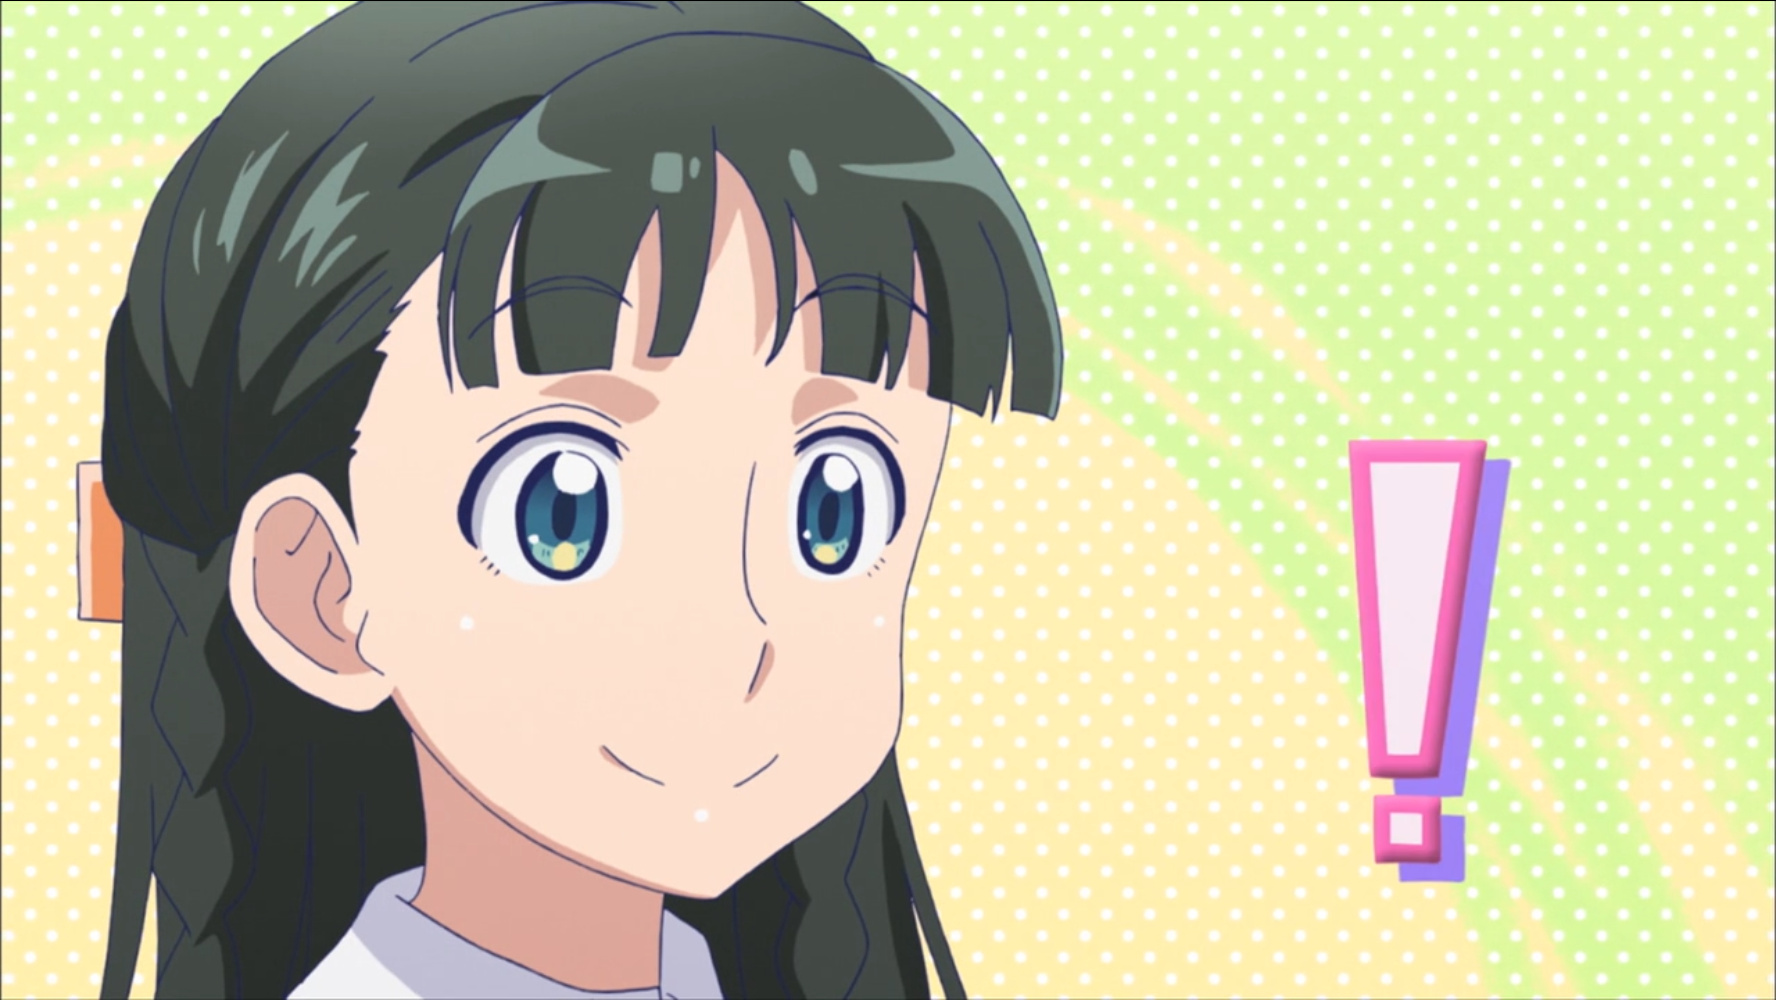 Con una sonrisa inocente, Ojou se prepara para entrar en una trampa explosiva verbal que ella misma hizo en una escena del 2016 ¡Por favor, dímelo!  Anime de televisión Galko-chan.